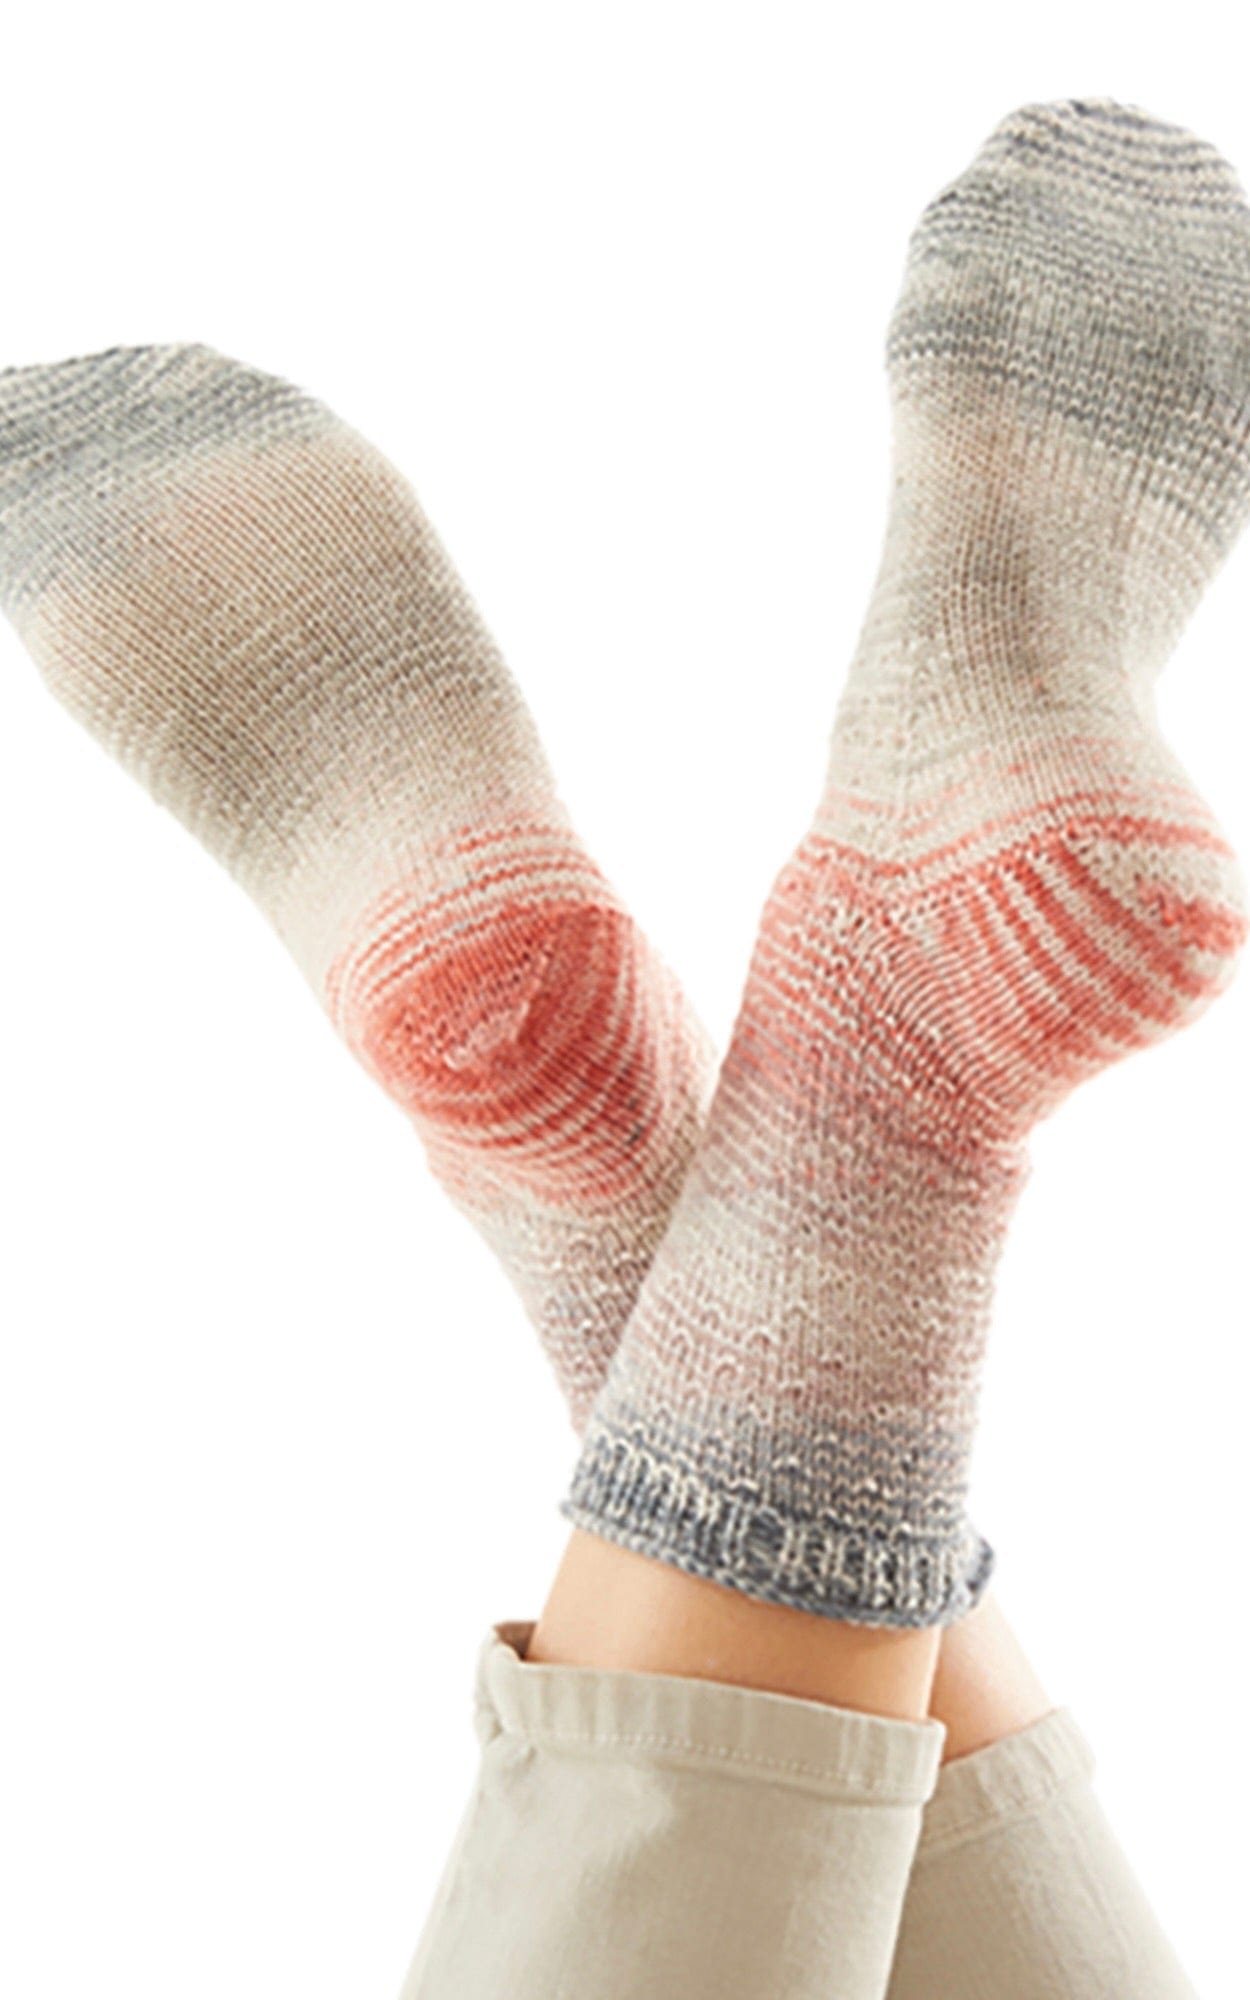 LANA GROSSA Strickset Socken mit Rippenmuster - MEILENWEIT 50 MERINO HAND-DYED - Strickset